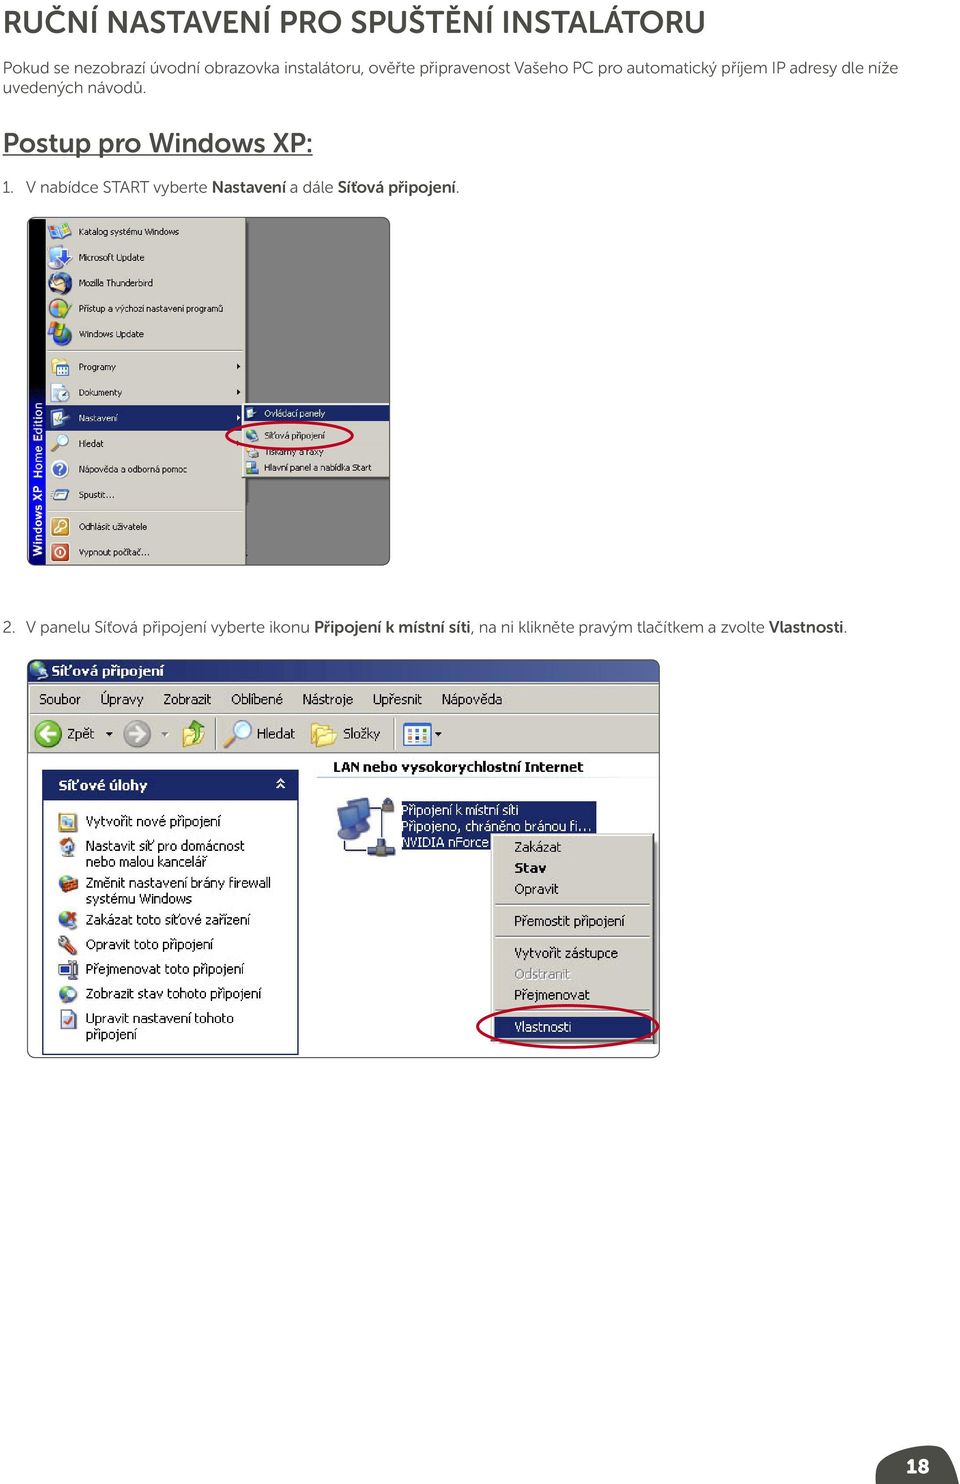 Postup pro Windows XP: 1. V nabídce START vyberte Nastavení a dále Síťová připojení. 2.